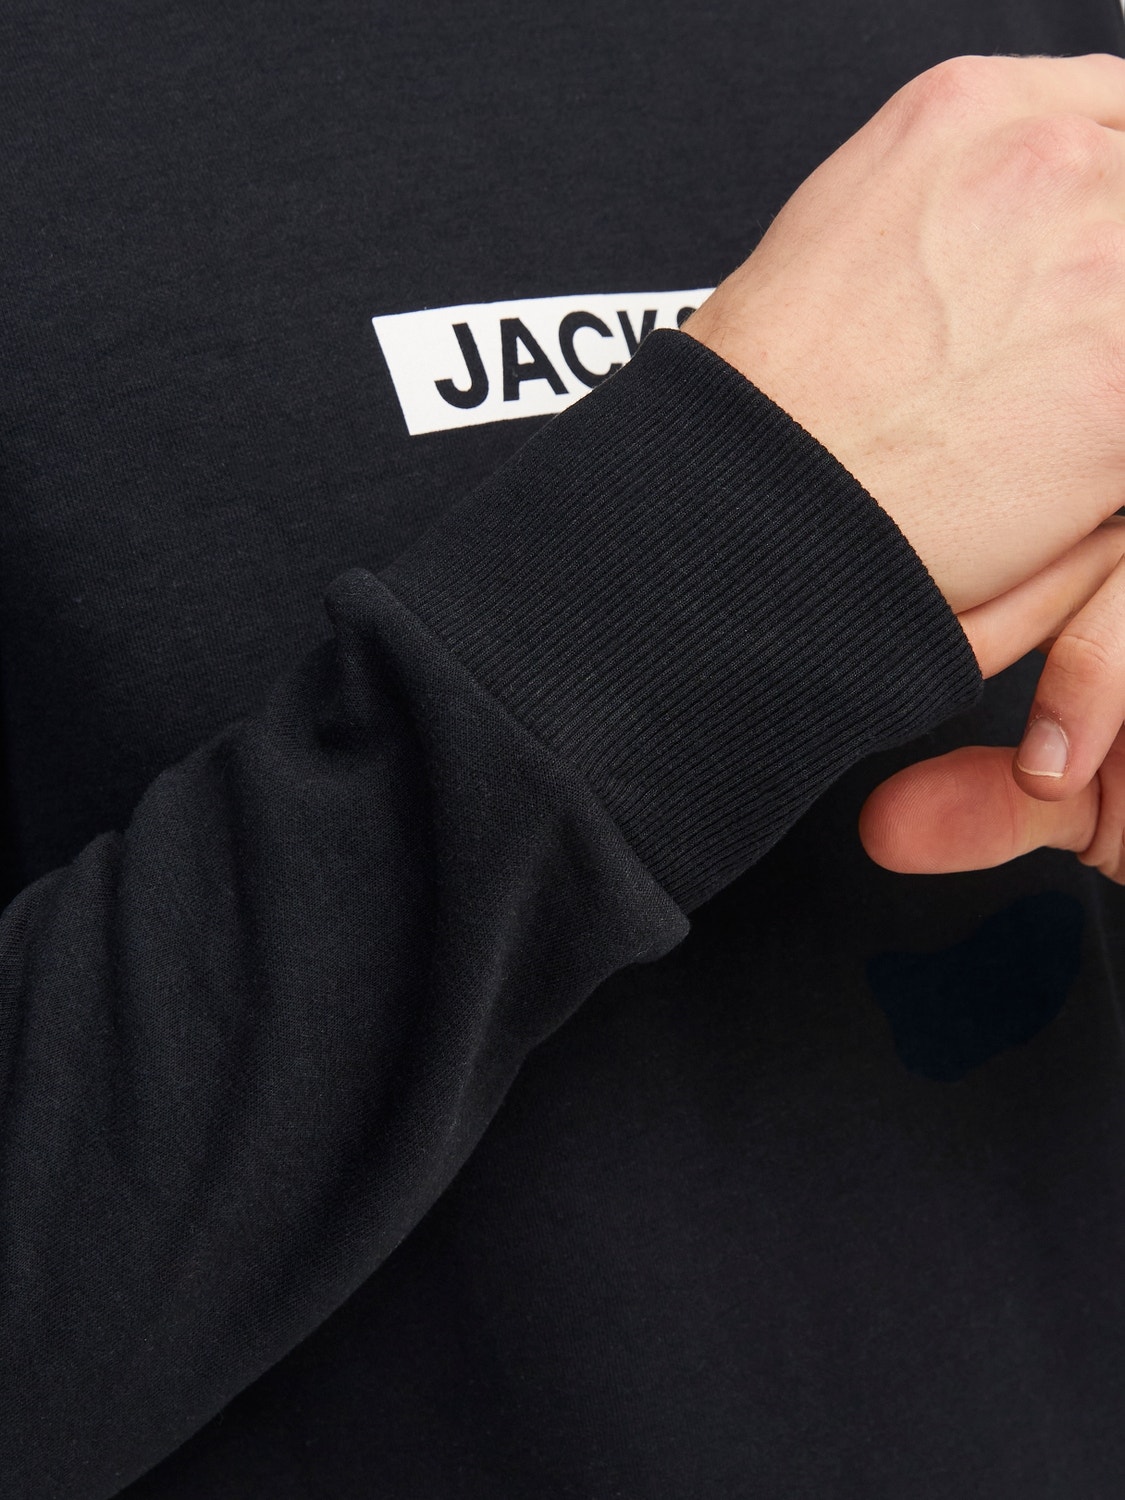 Jack & Jones Sudadera con cuello redondo Logotipo -Black - 12255067